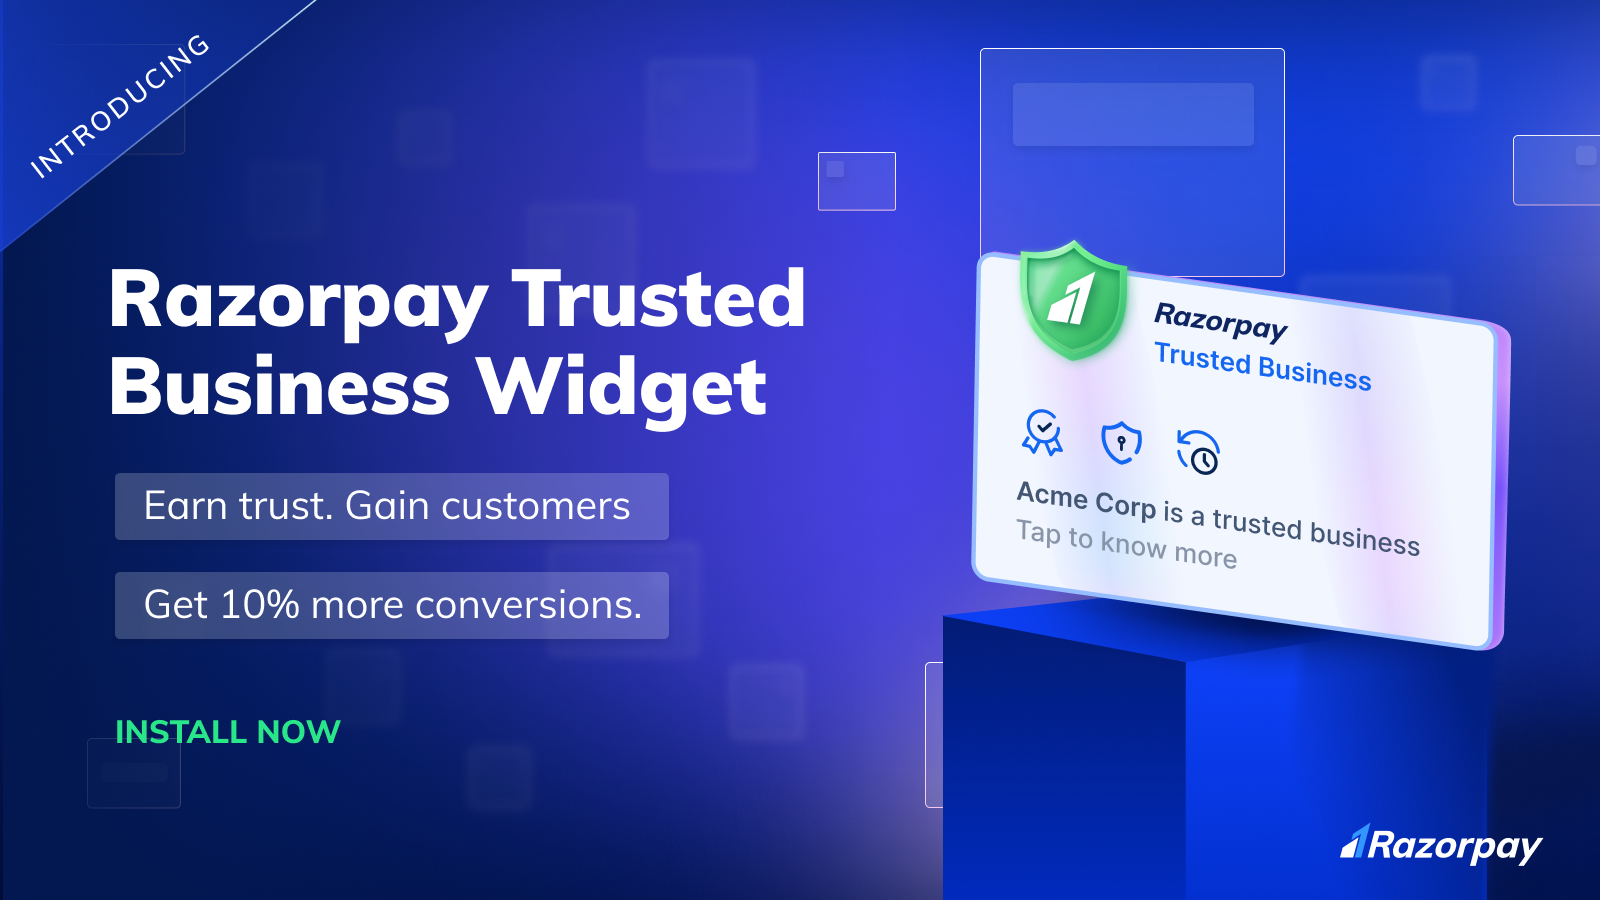 Construya confianza con sus clientes. Presentamos el widget RTB